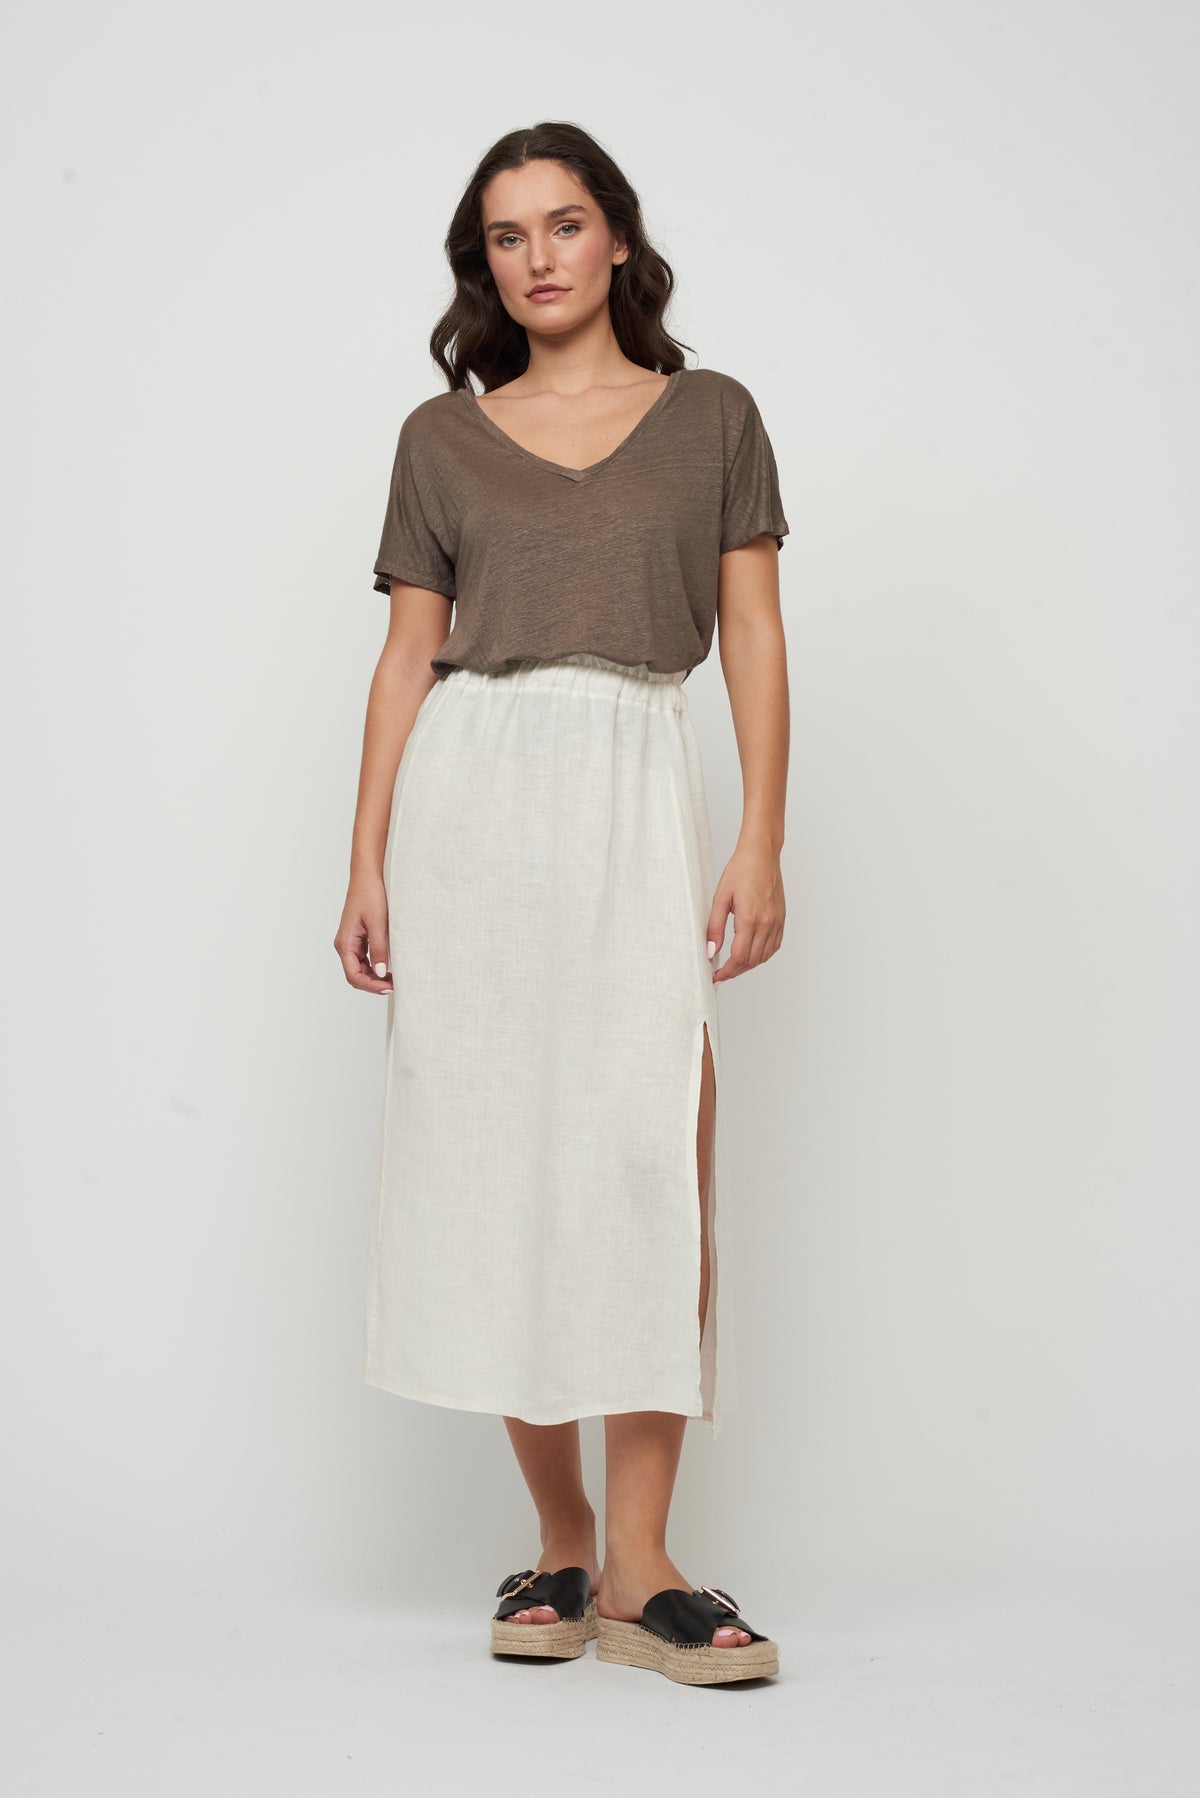 Pistache Linen Skirt with Slit